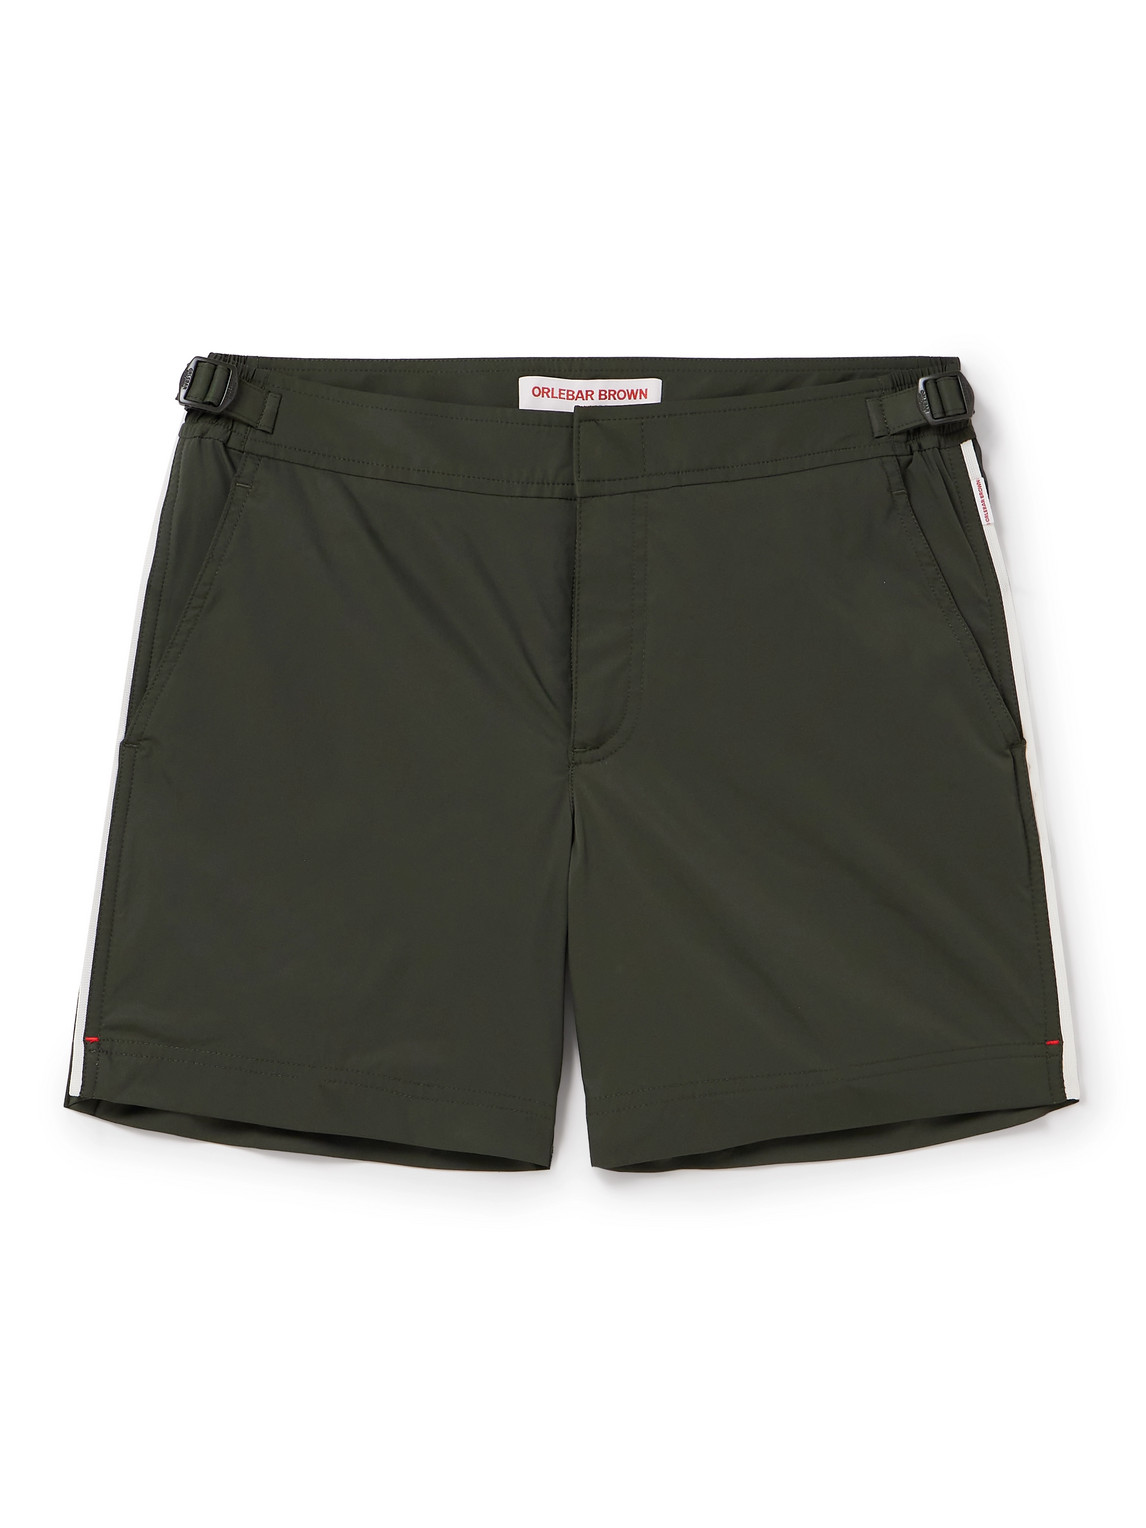 Orlebar Brown Bulldog Swim Shorts In Green